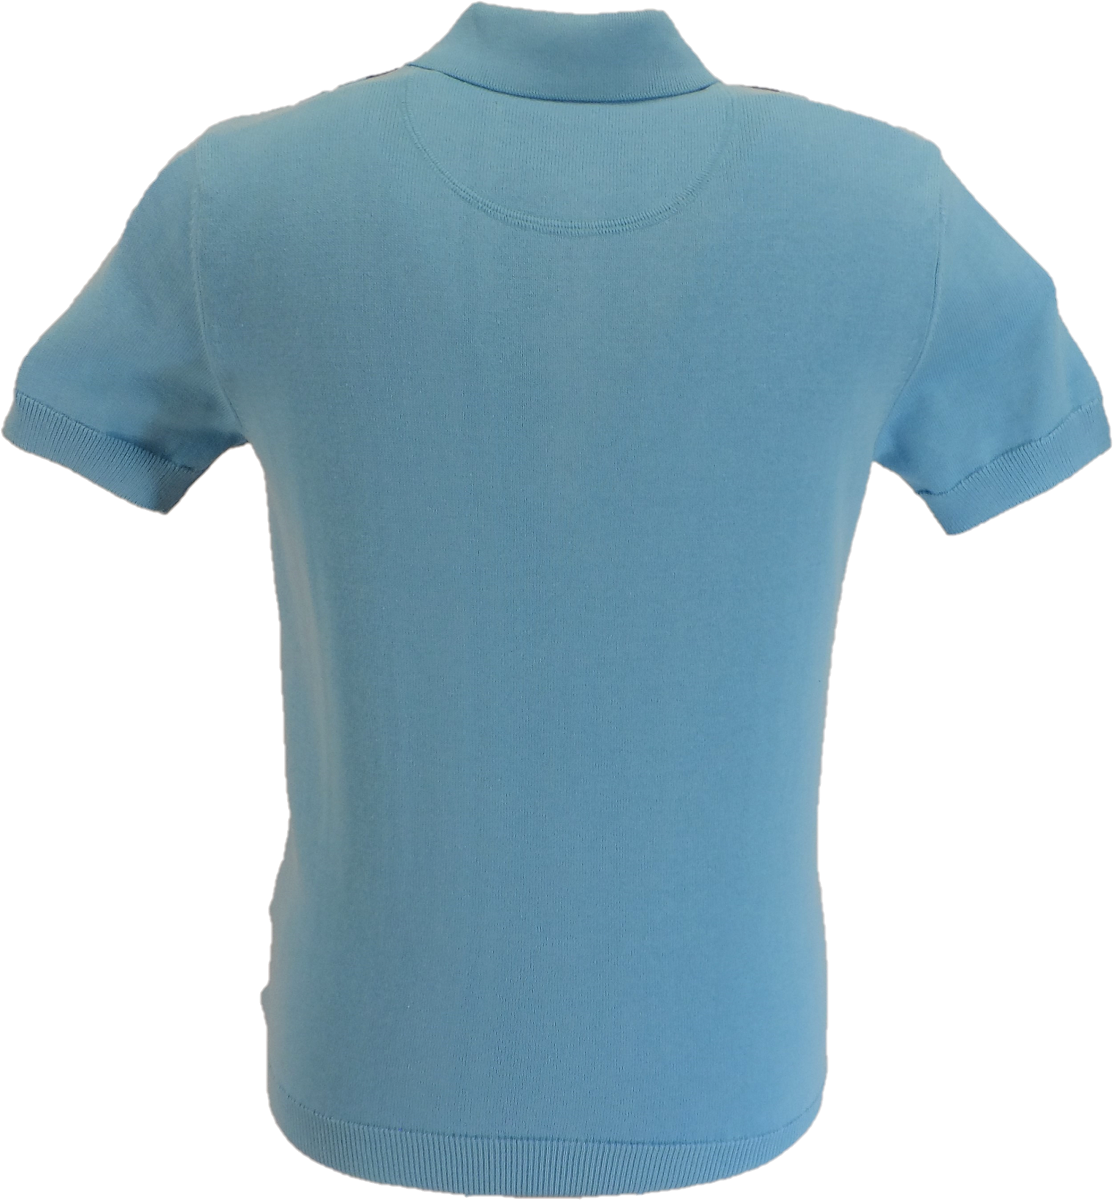 يسجل Trojan قميص بولو محبوك مخطط باللون الأزرق النعناعي